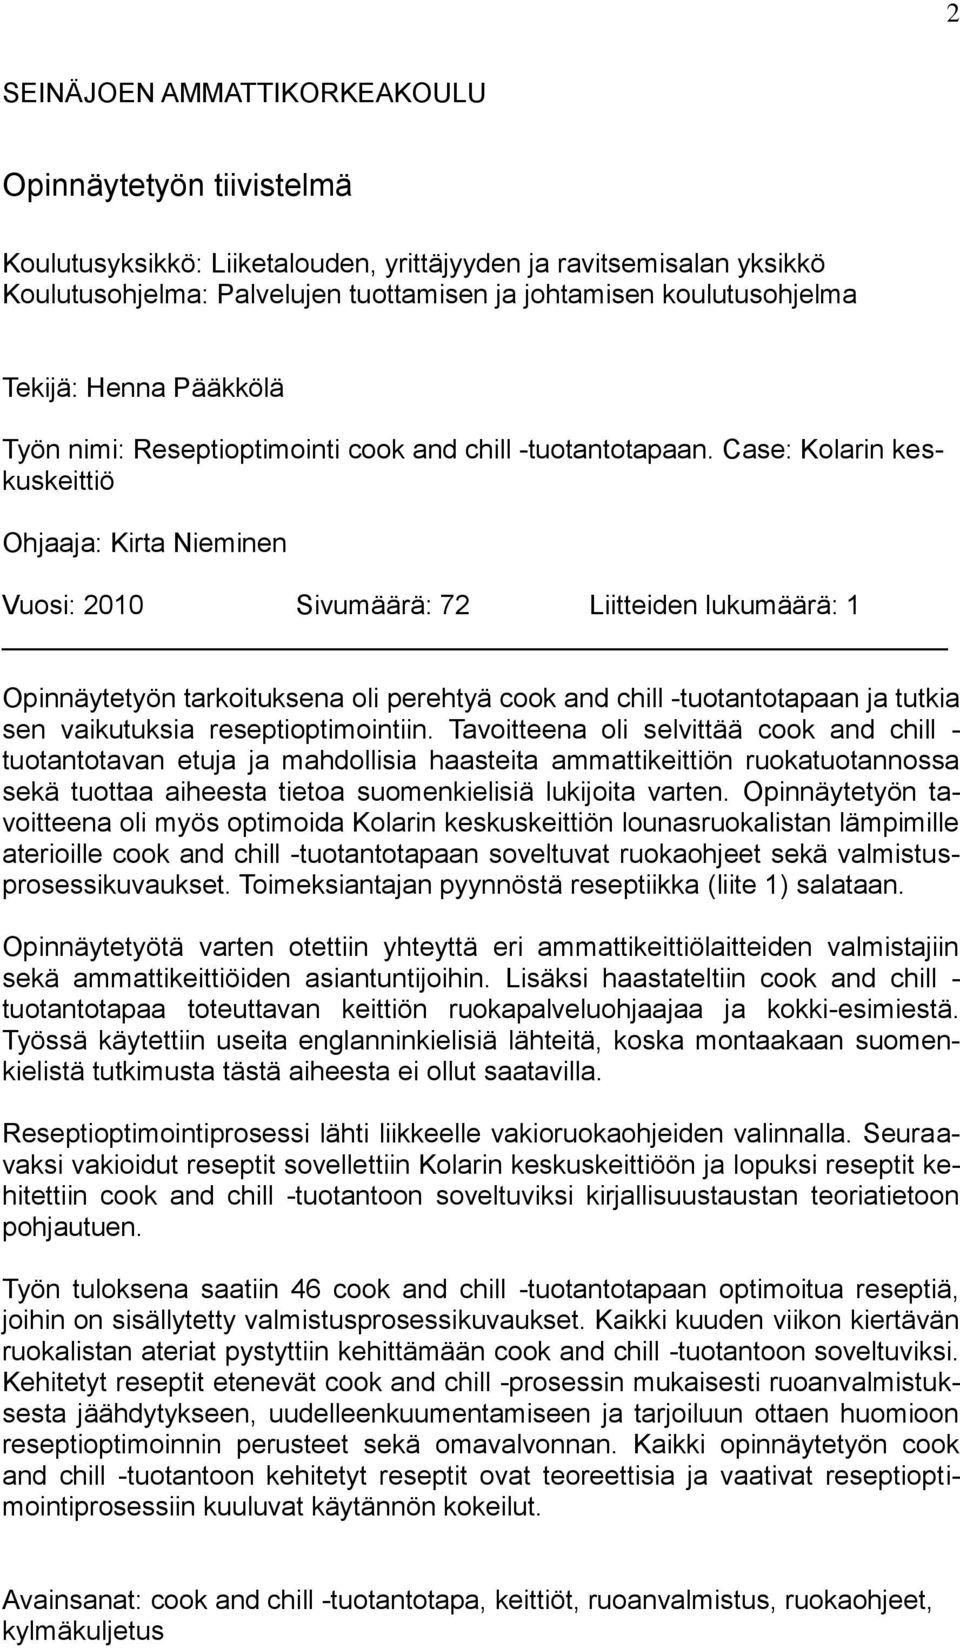 Case: Kolarin keskuskeittiö Ohjaaja: Kirta Nieminen Vuosi: 2010 Sivumäärä: 72 Liitteiden lukumäärä: 1 Opinnäytetyön tarkoituksena oli perehtyä cook and chill -tuotantotapaan ja tutkia sen vaikutuksia